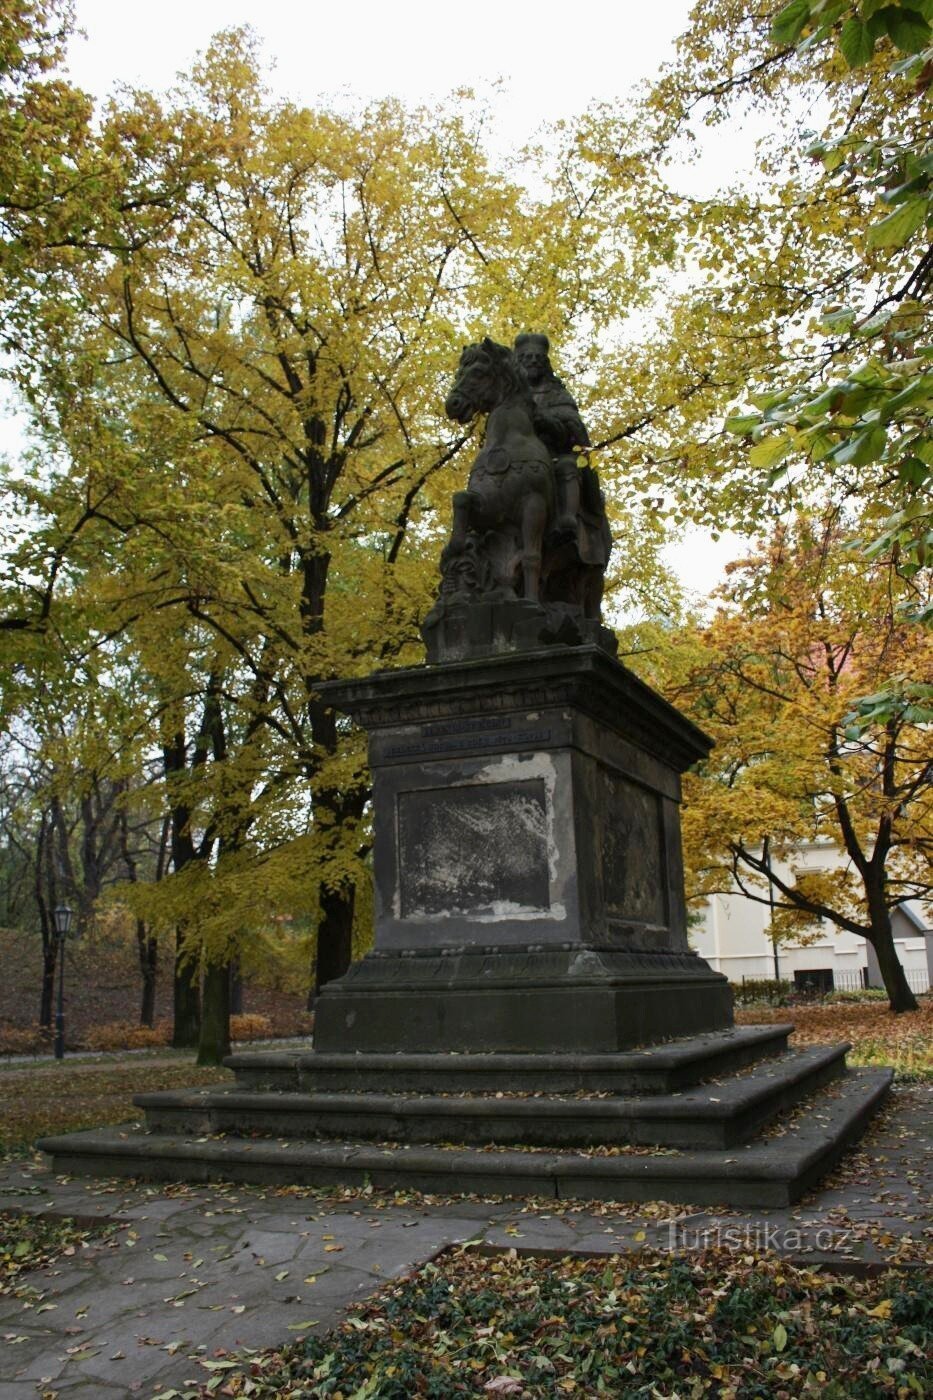 Praga - monumento equestre de St. Venceslau em Vyšehrad